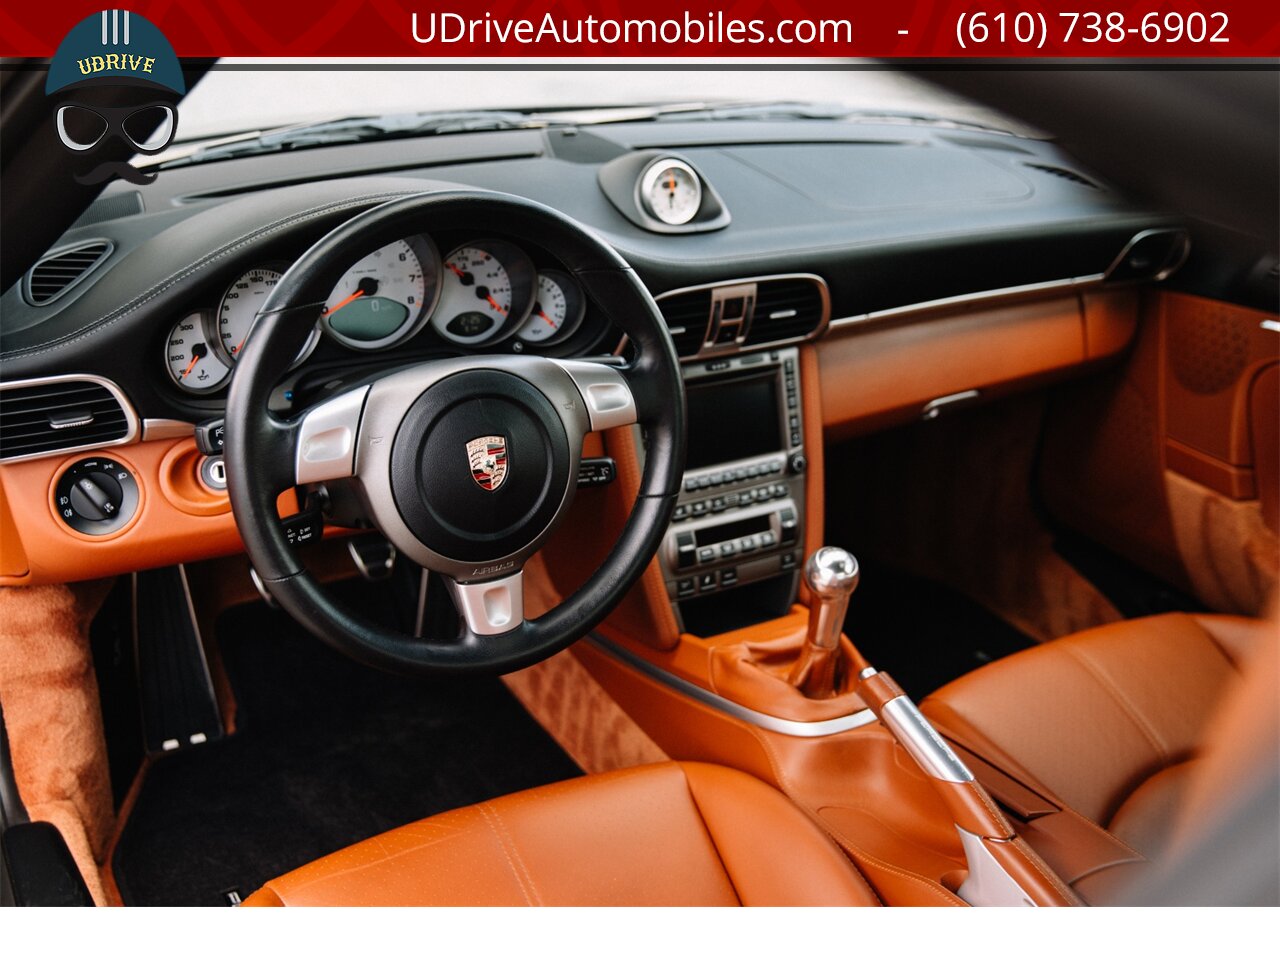 2007 Porsche 911 997S 6Sp Chrono Sprt Seats Sprt Shift Sprt Exhaust  Terracotta Full Lthr 25k Miles $100K MSRP - Photo 6 - West Chester, PA 19382